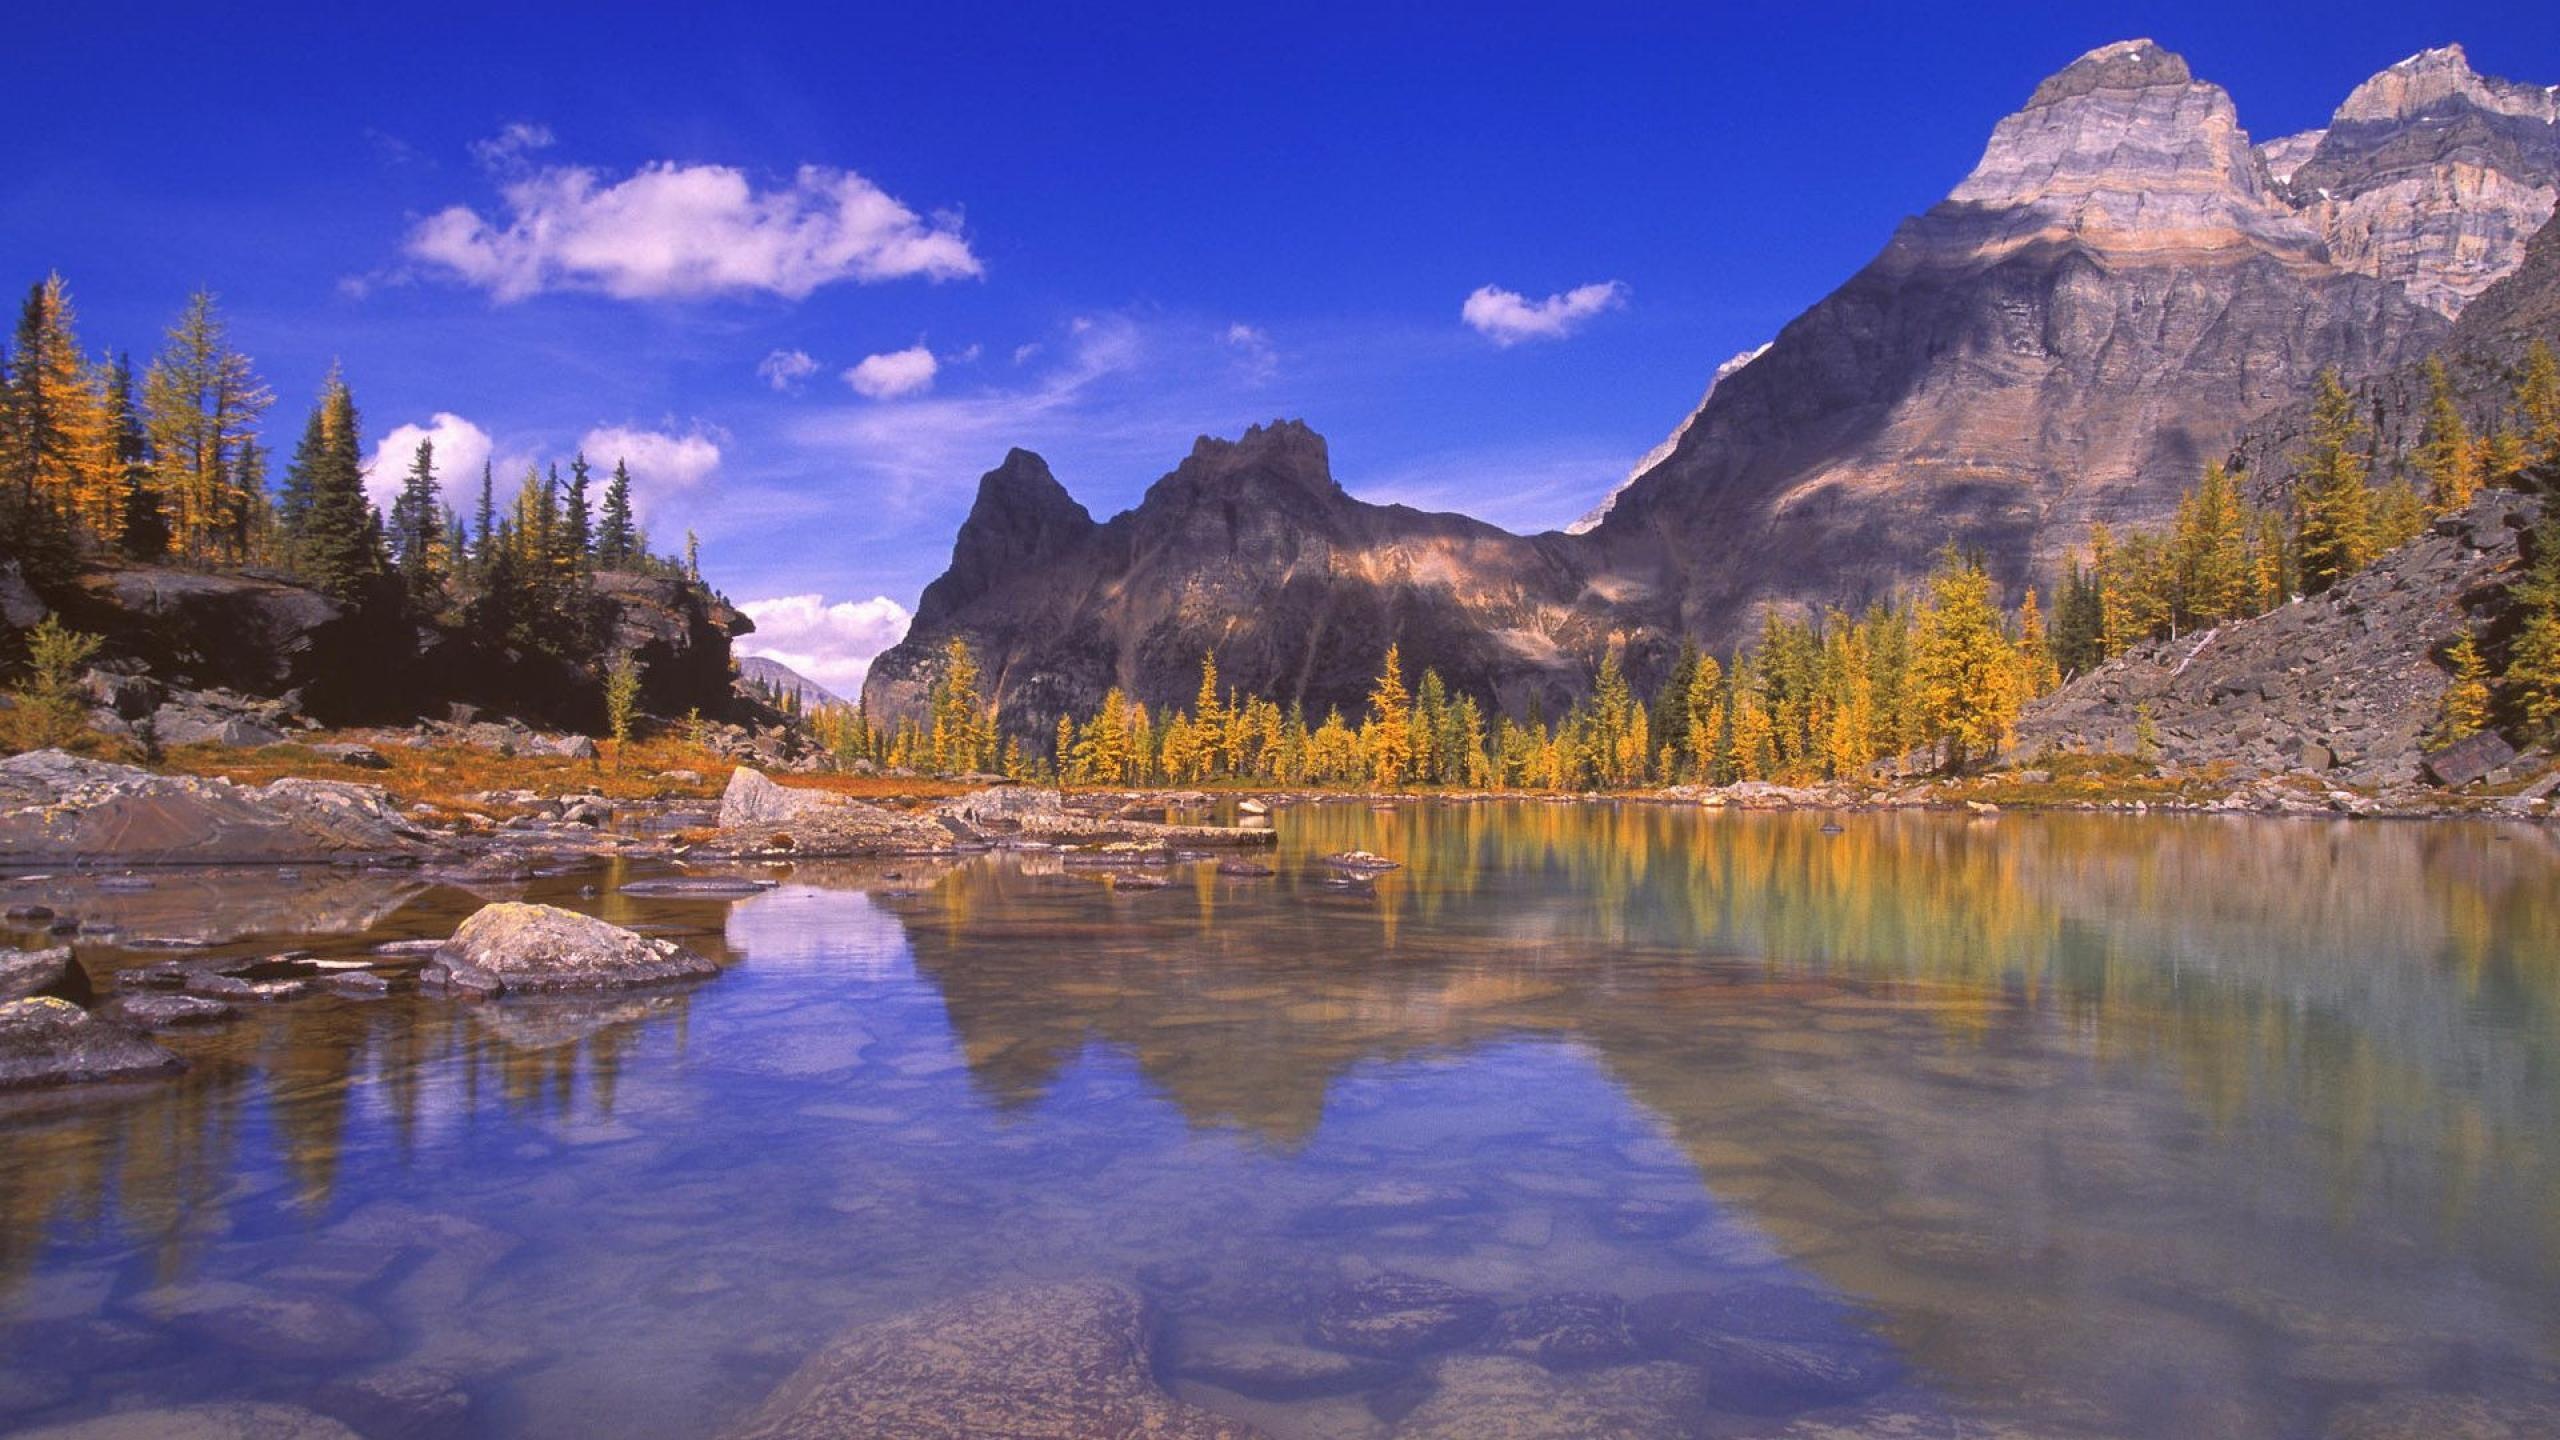 Rocky Mountain Park, HD wallpapers, Stunning nature, American wilderness, 2560x1440 HD Desktop